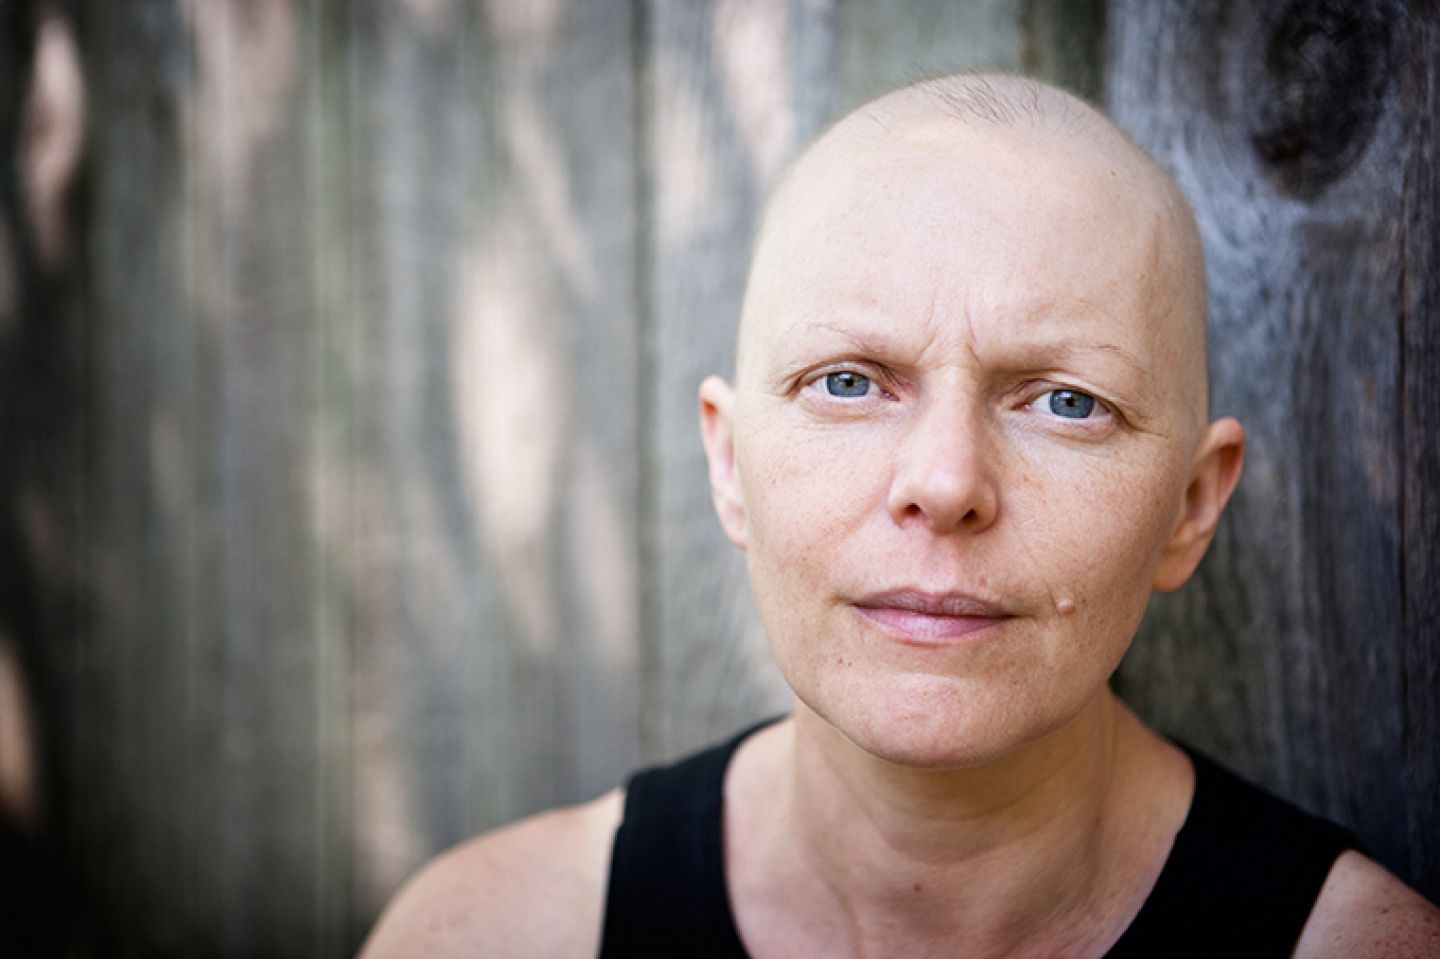 Haarverlust durch Chemotherapie © Michael Courtney/thinkstock